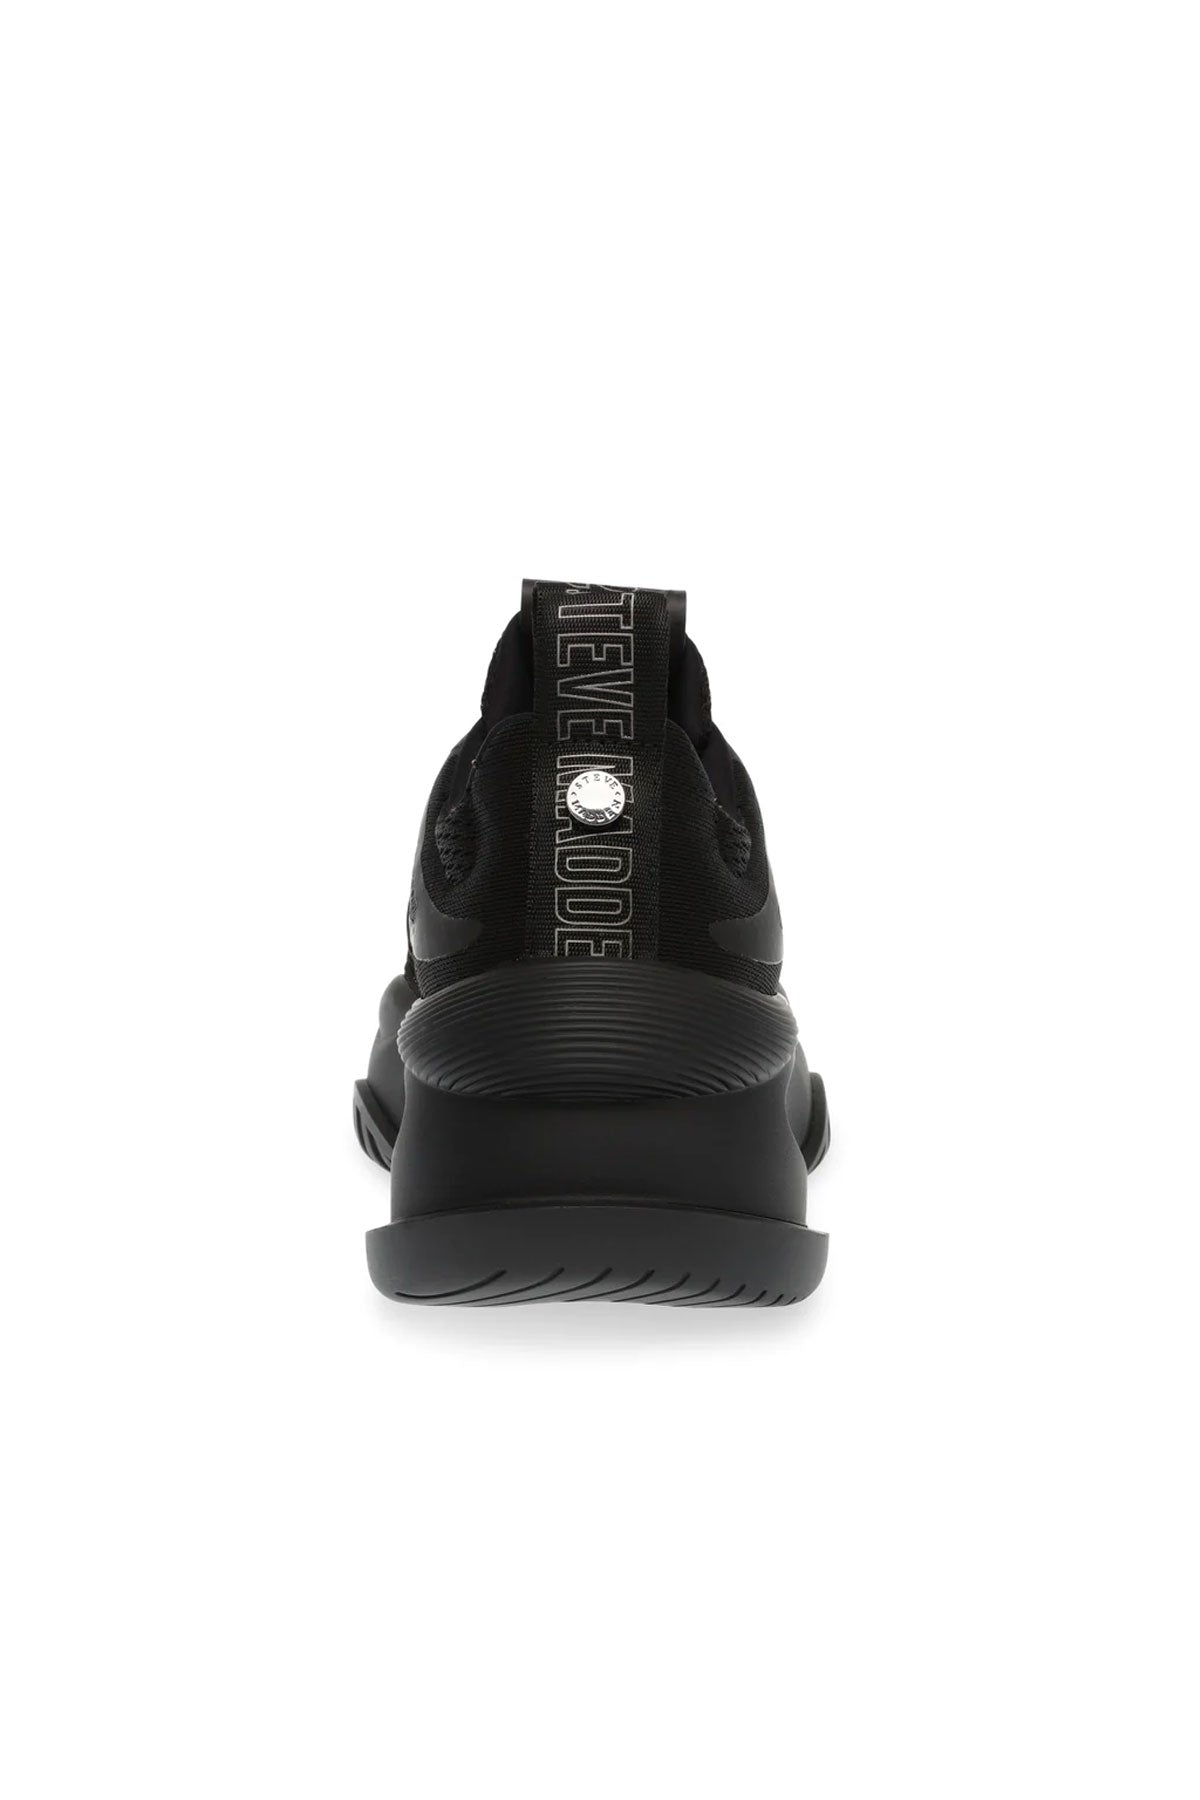 סטיב מאדן נעלי ספורט Boost up בצבע שחור לנשים-Steve Madden-36-נאקו